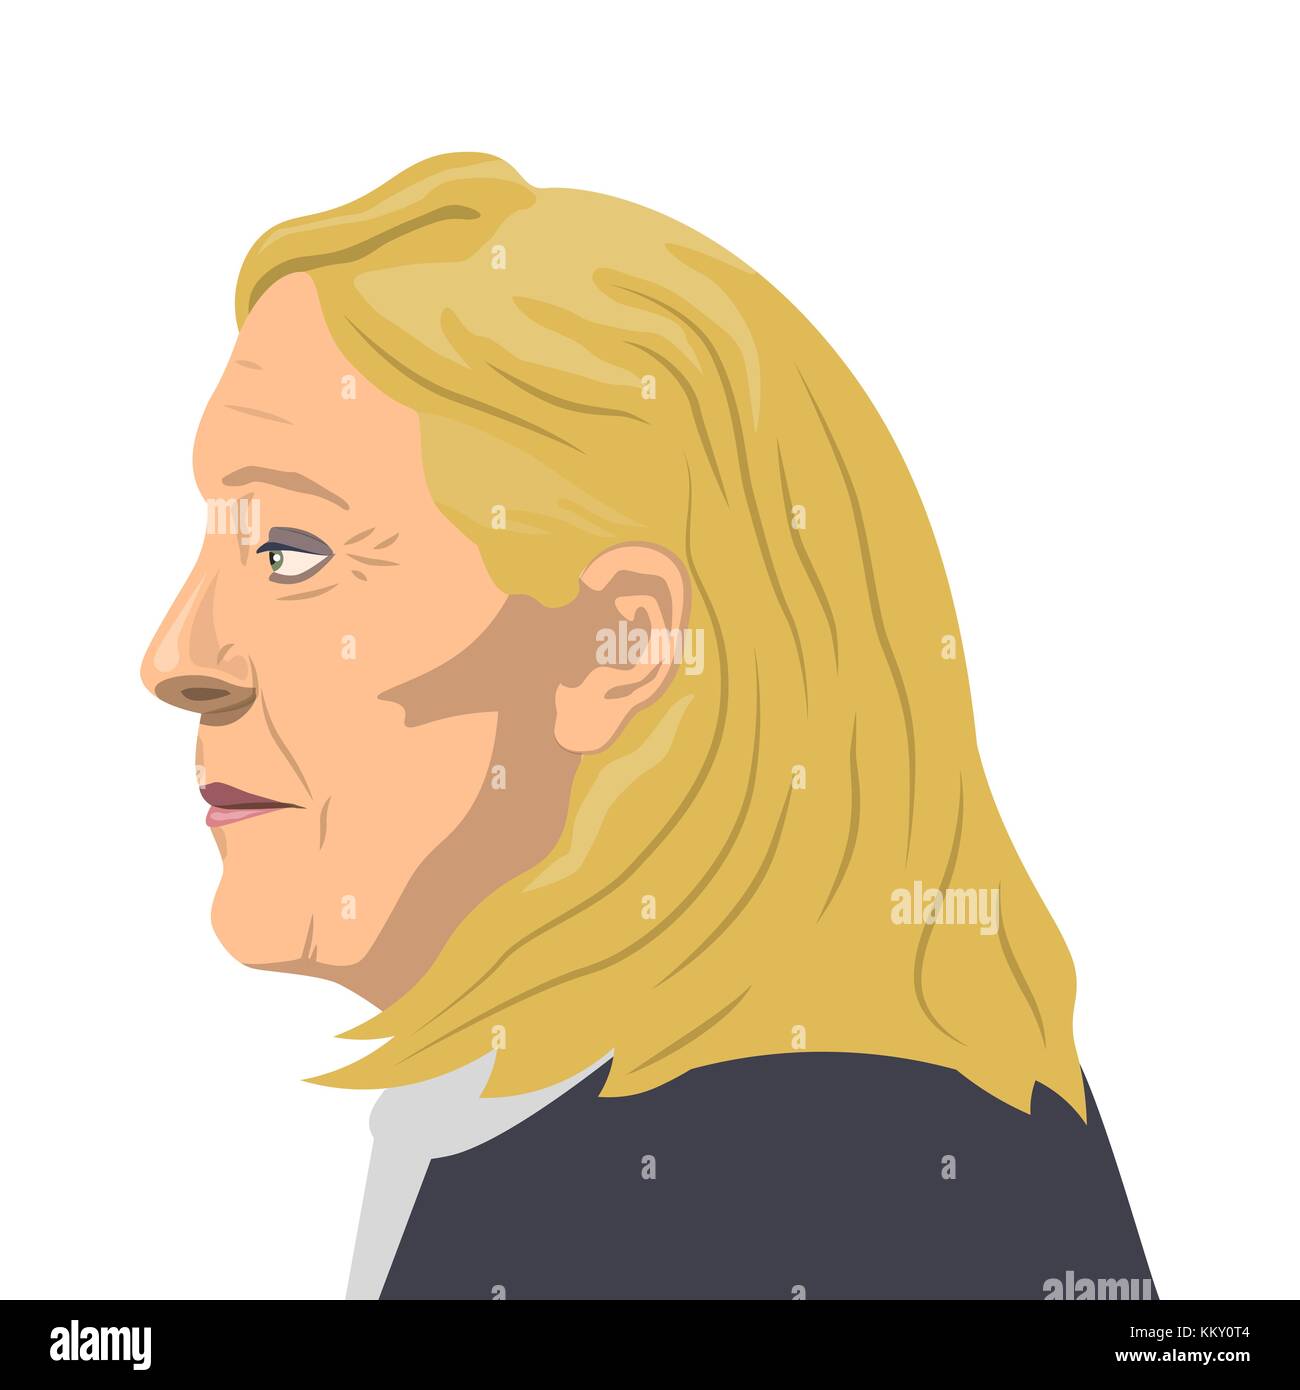 Novenber 1, 2017 Editorial Illustration eines französischen Politikers Marine le Pen Portrait auf weißem Hintergrund. Stock Vektor